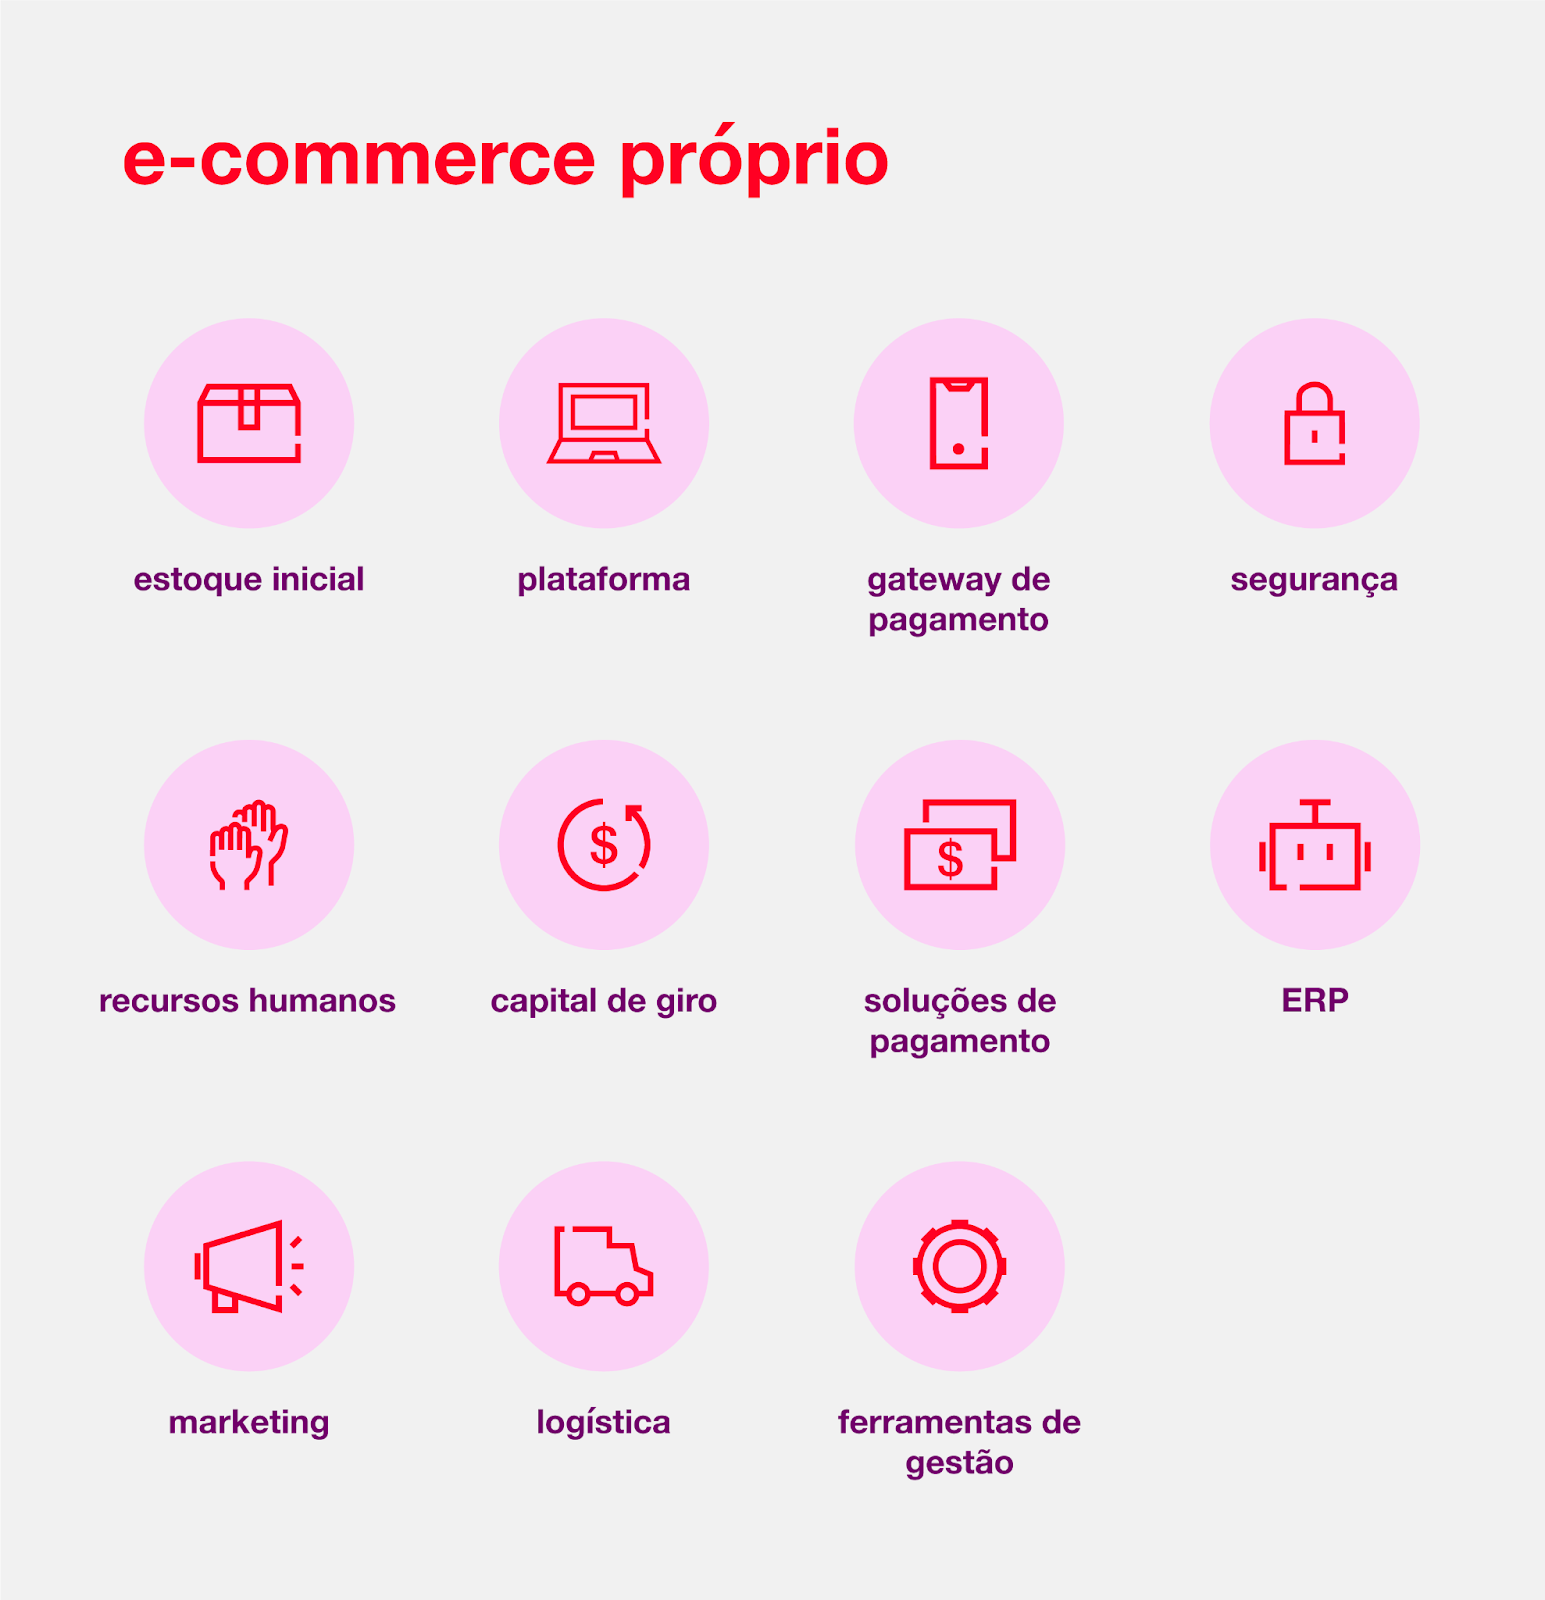 e-commerce próprio